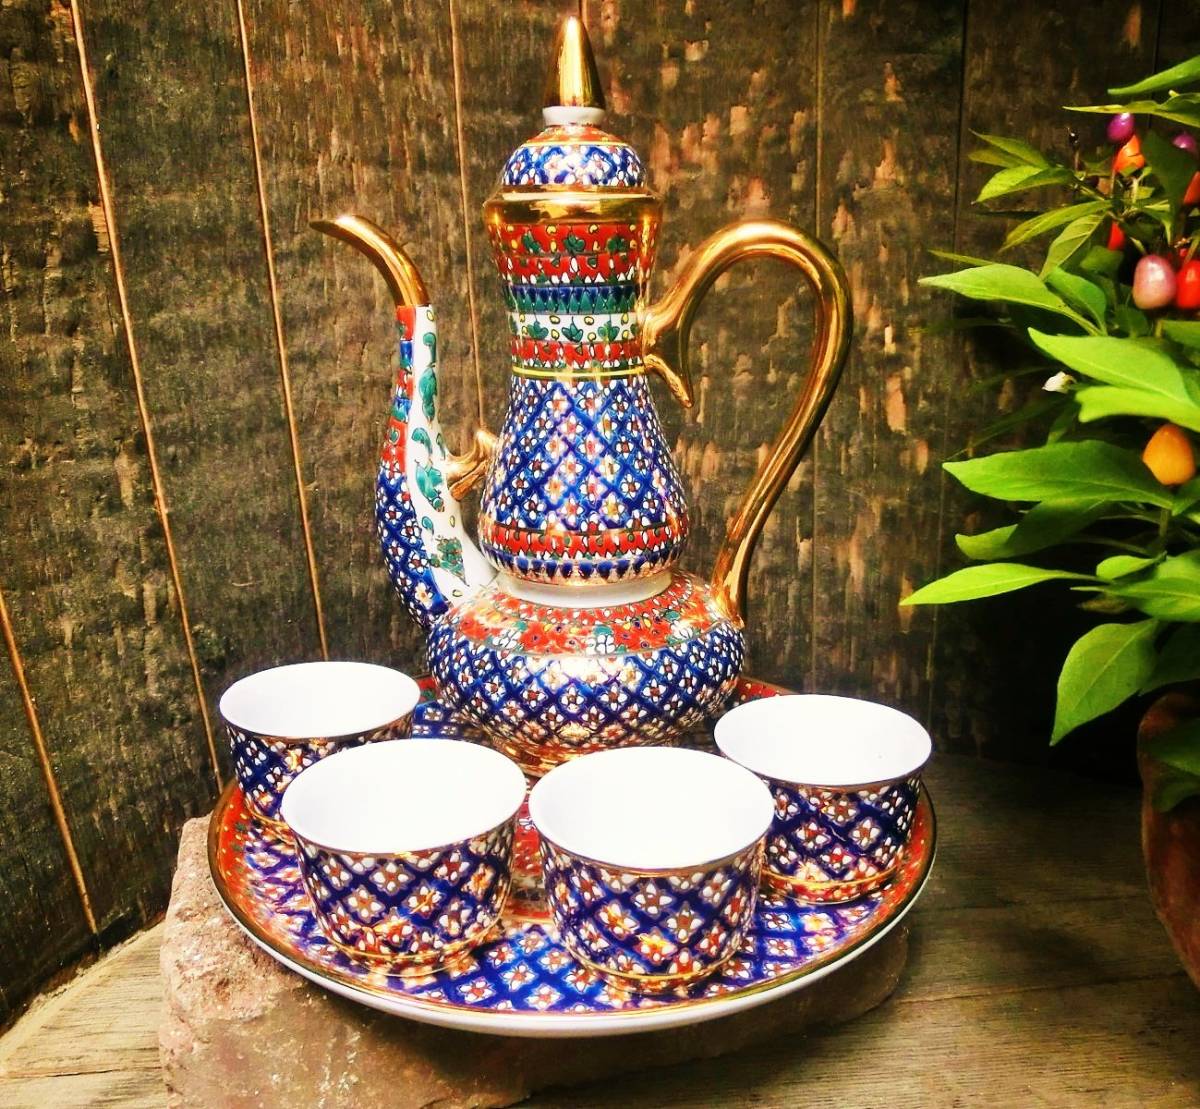 Einzigartig ☆ Brandneu ☆ [Königreich Thailand] Traditionelles Benjarong-Keramik-Teeservice ④ Luxus, wunderschön in Blau handgefertigt, Japanisches Geschirr, Gericht, kleiner Teller